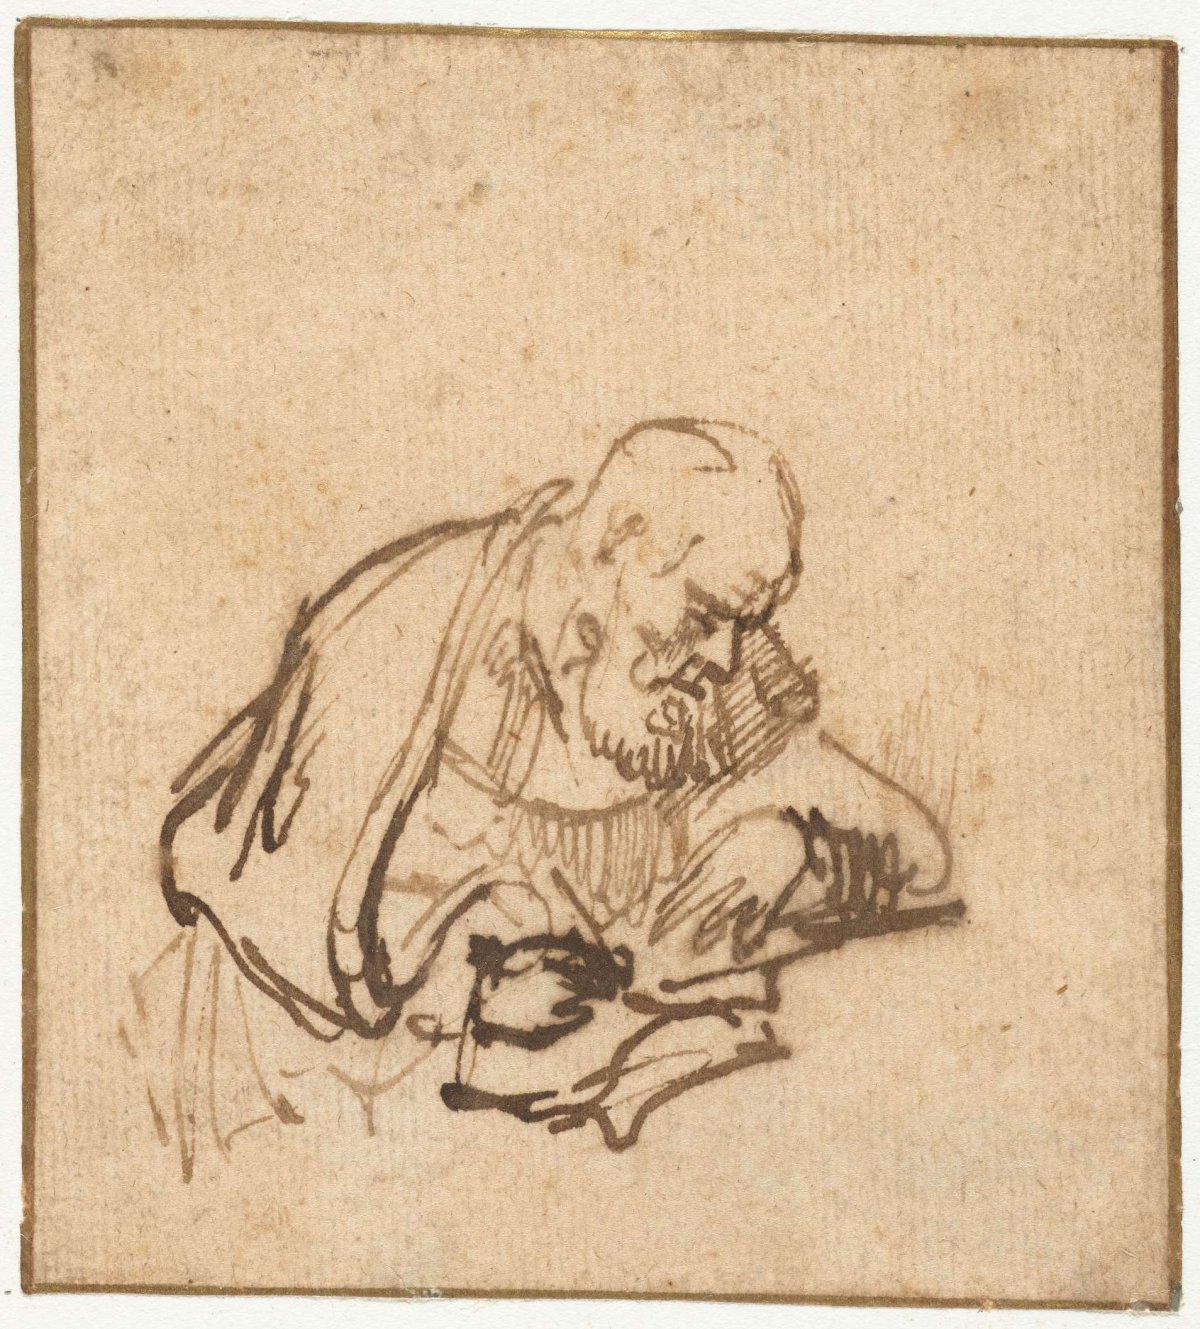 Old, Bearded Man Writing, Rembrandt van Rijn, c. 1640 - c. 1650